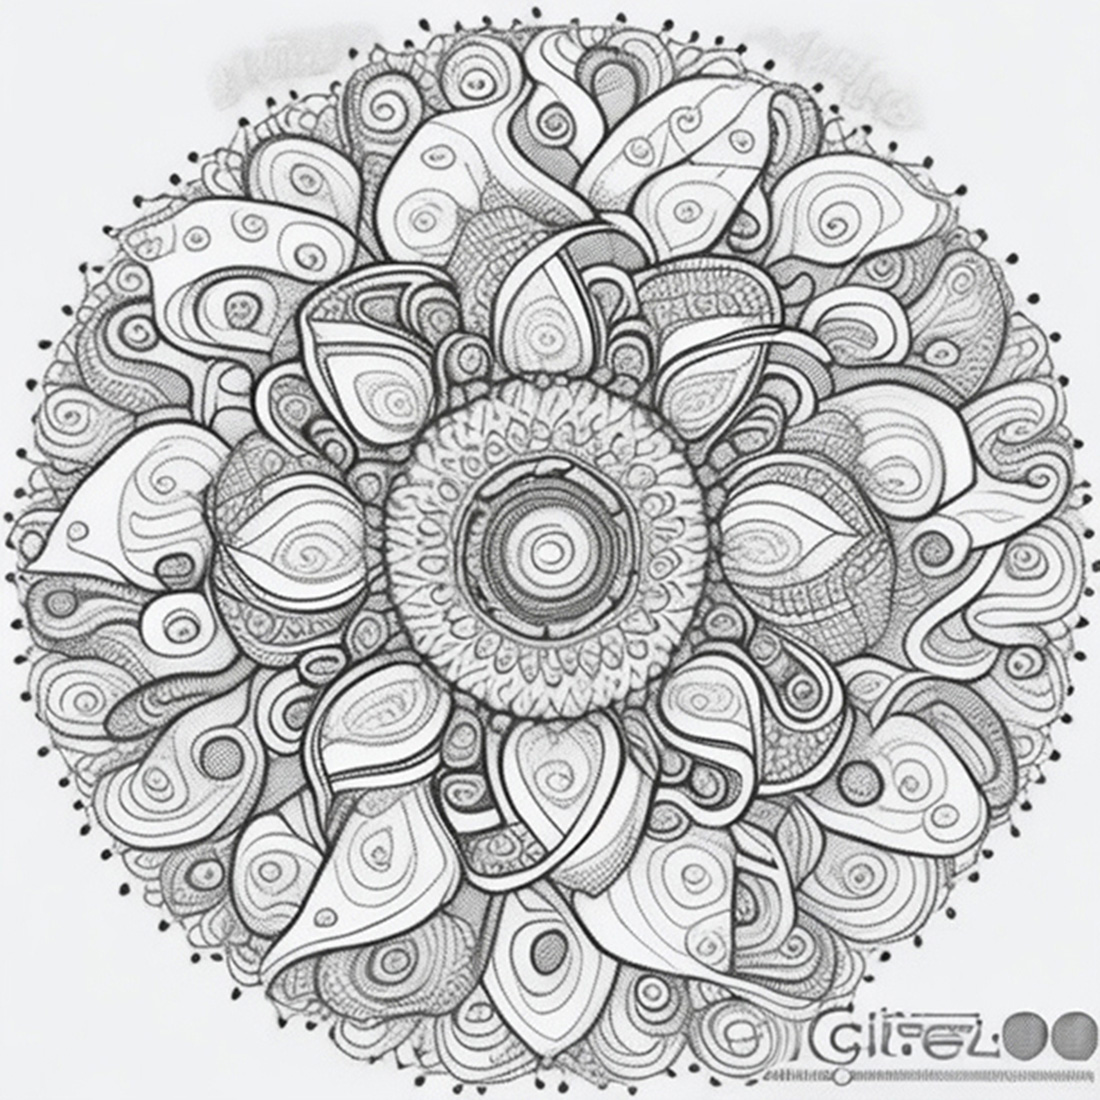 Maori Tribal Mandala Designs preview image.